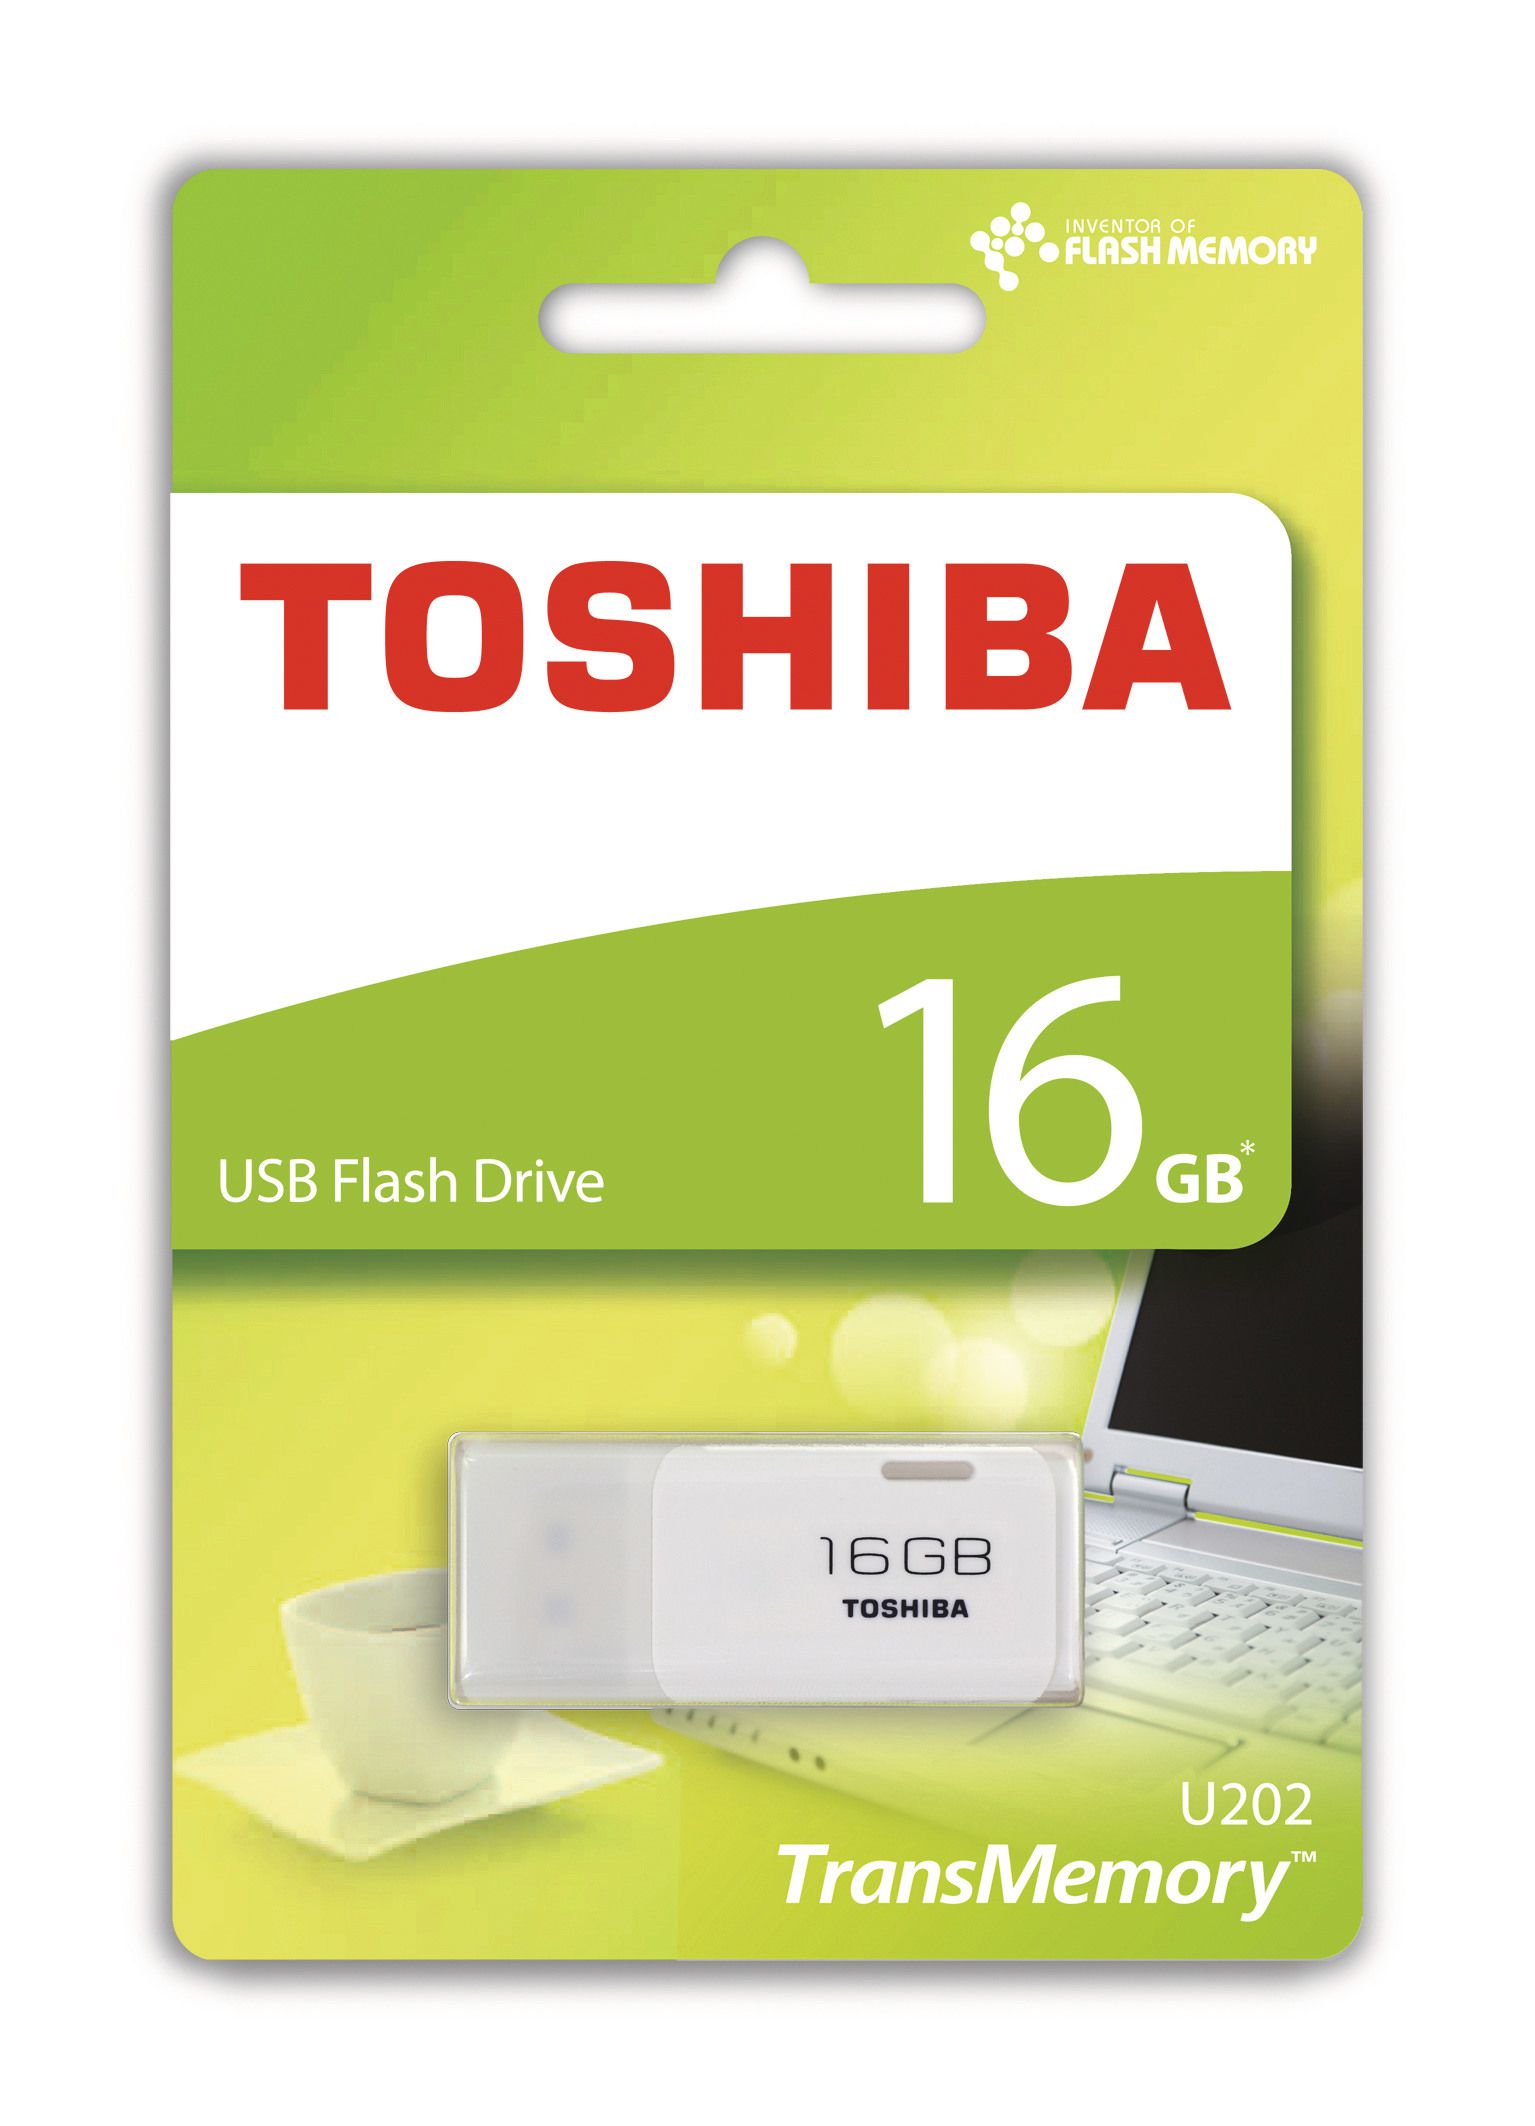 TOSHIBA TRANSMEMORY 16GB